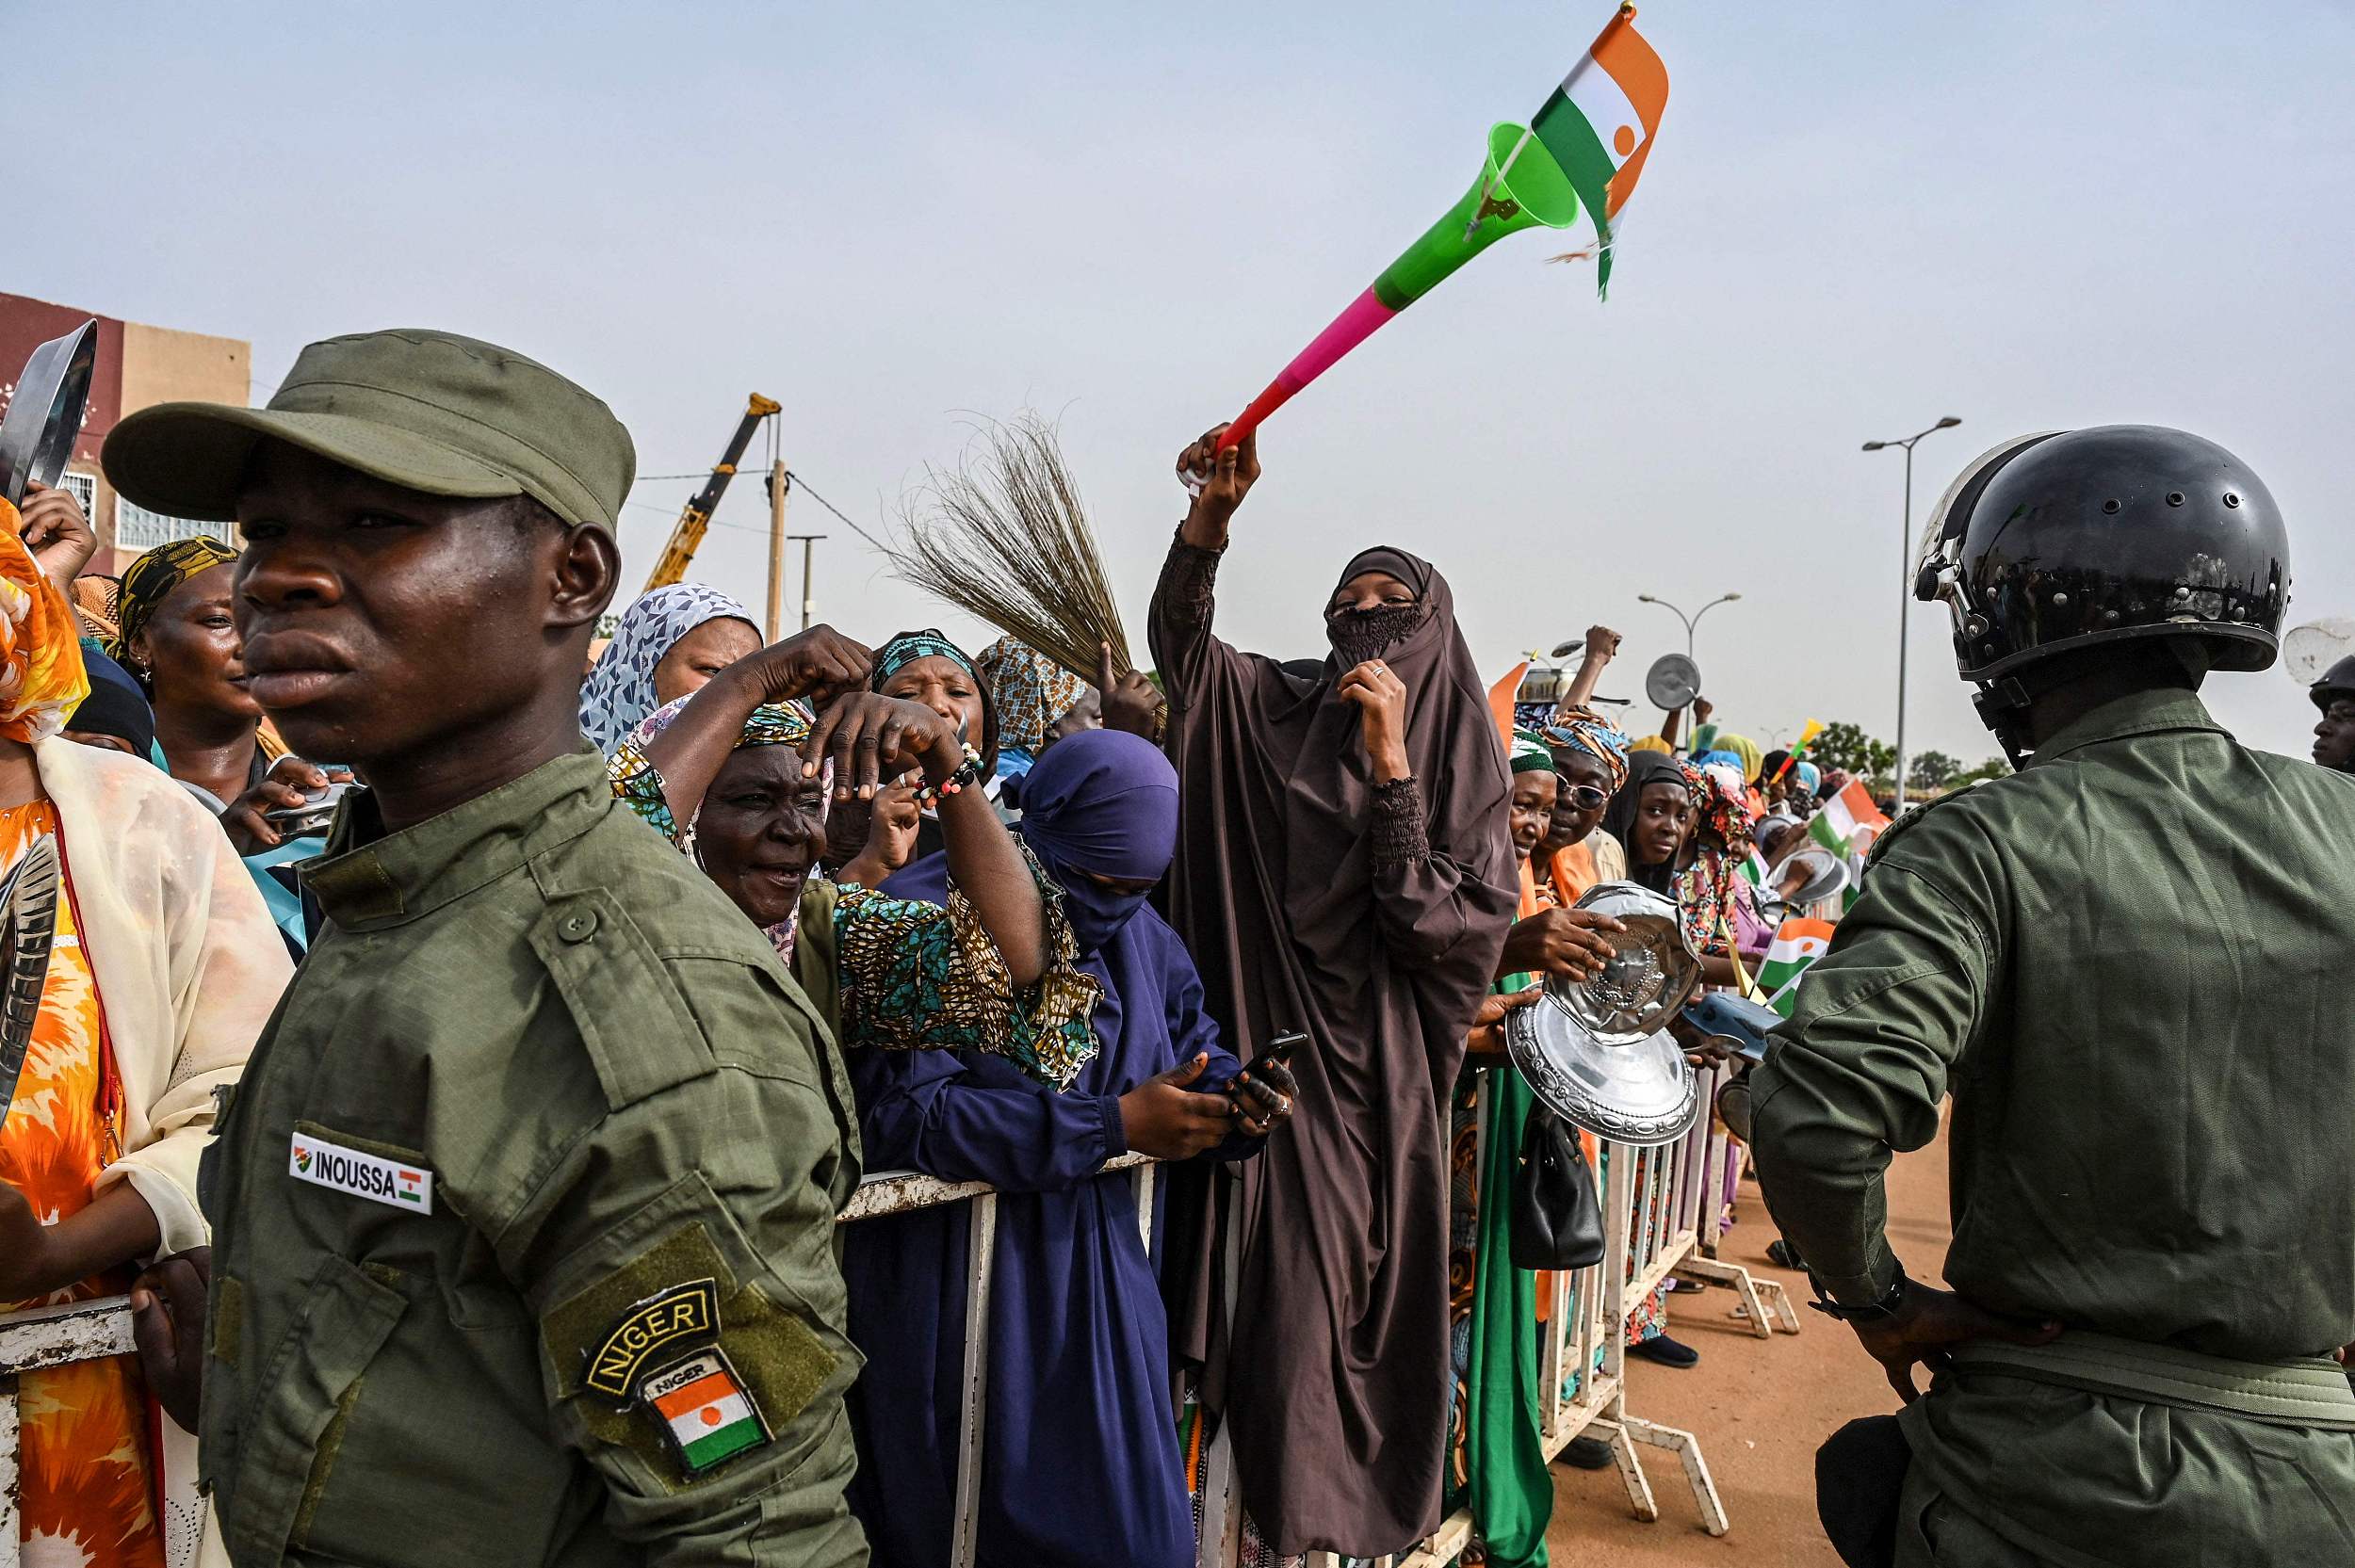 尼日尔军方废除尼法所有安全协议,并要求法军9月3日前撤出